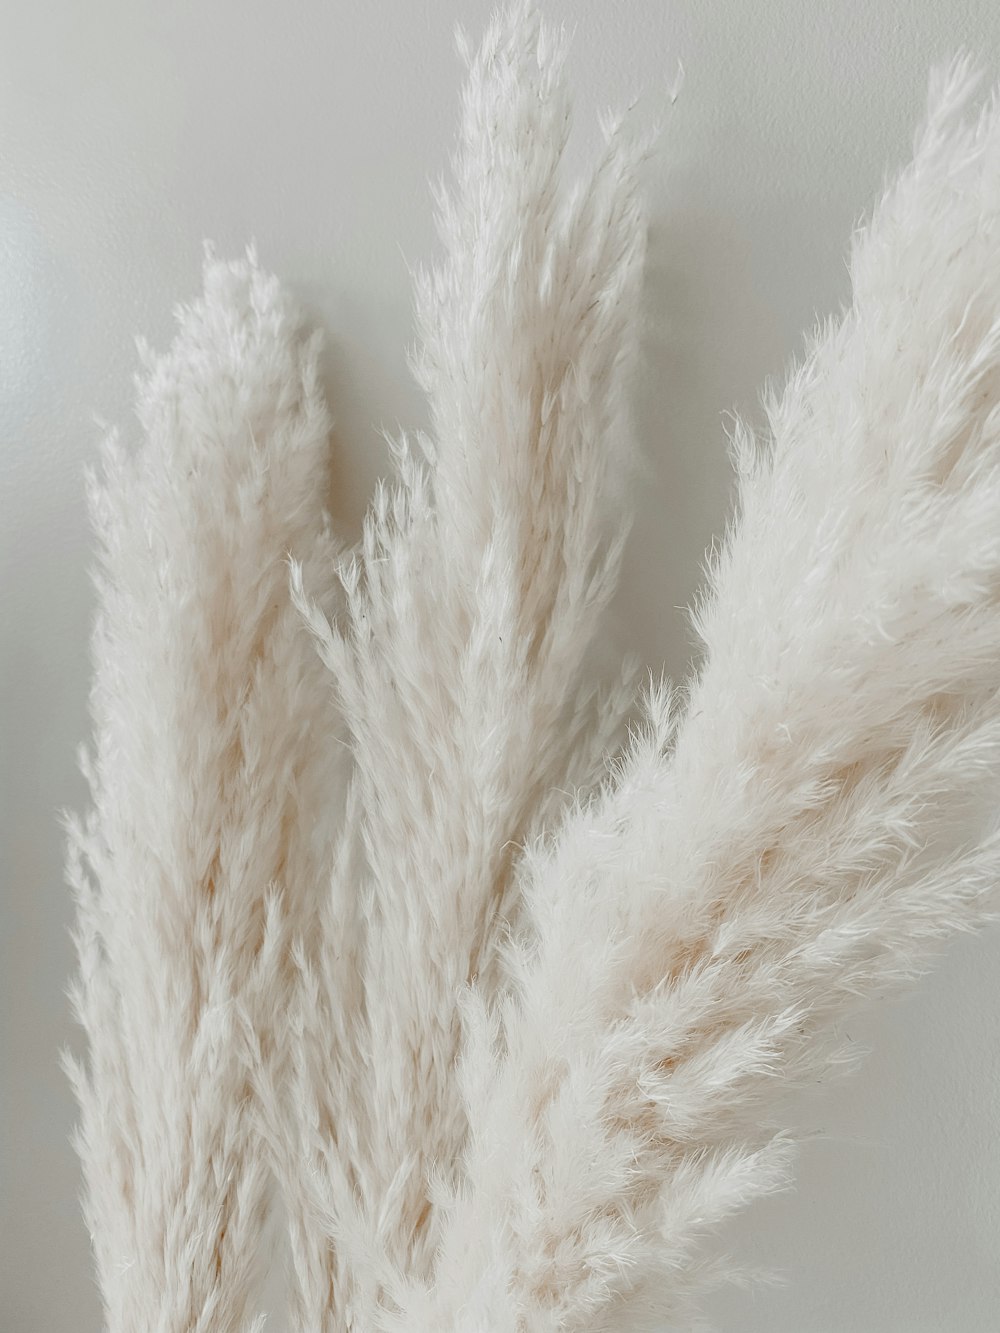 white fur textile on white surface